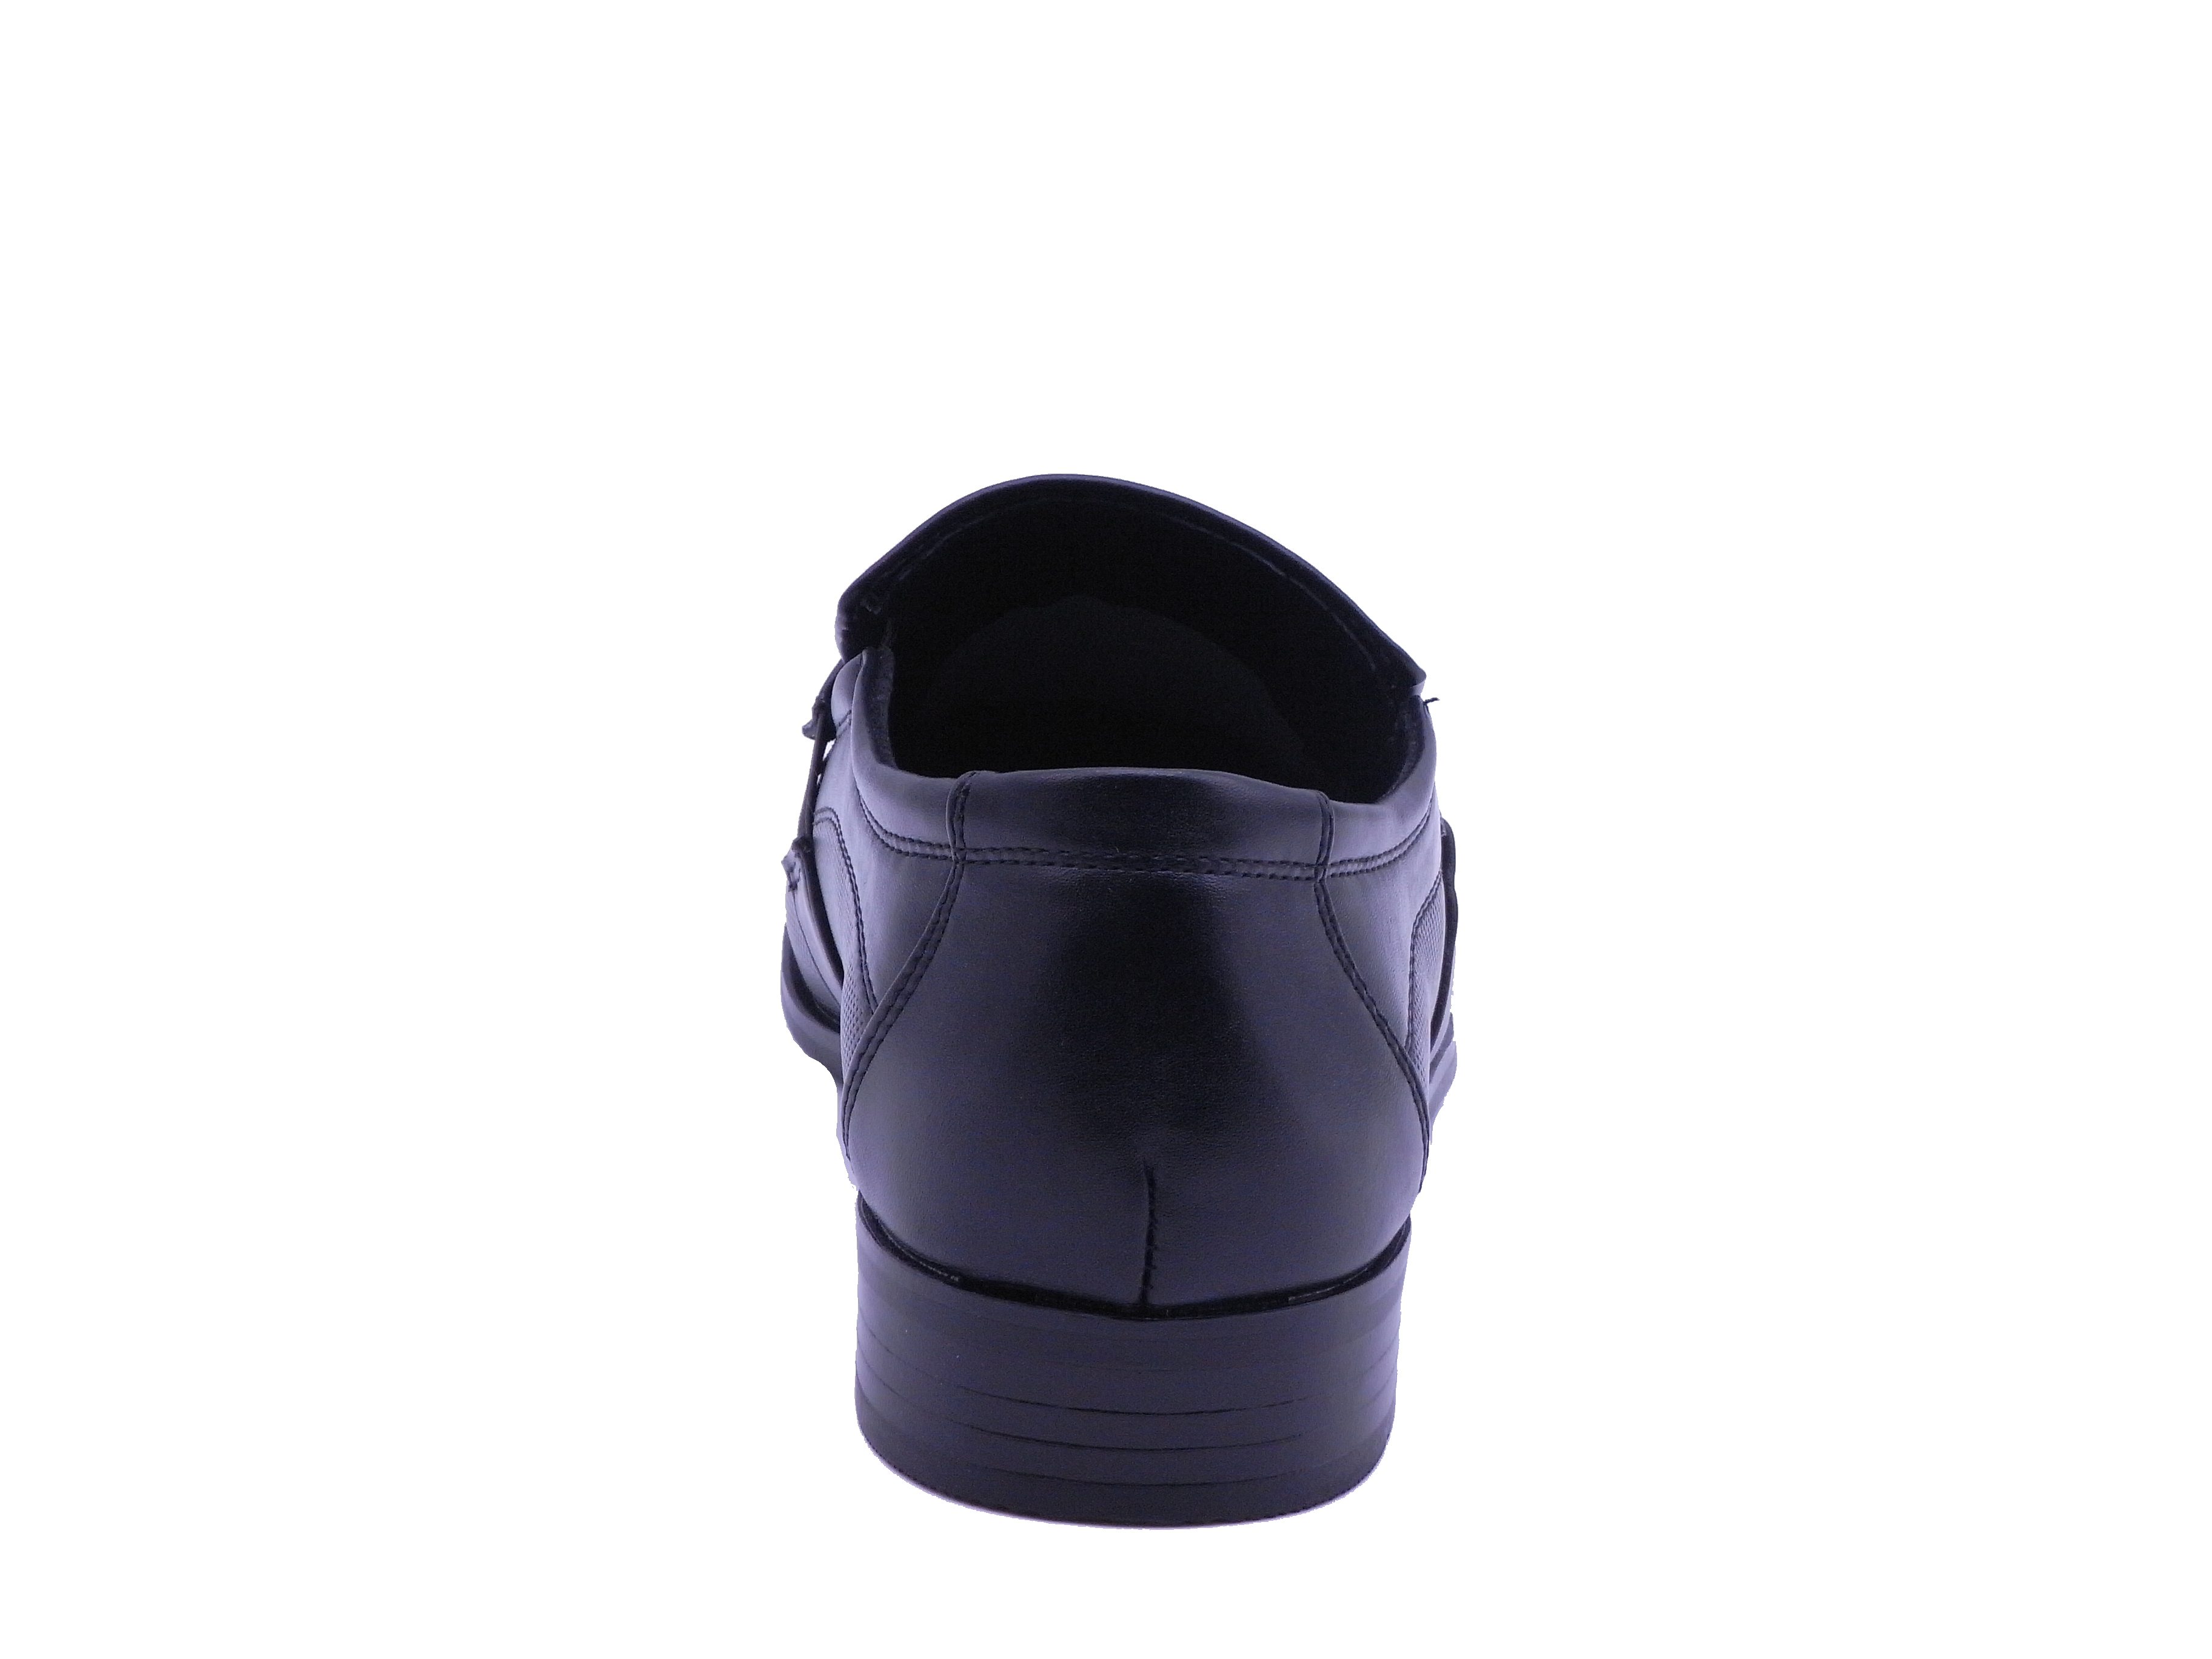 Men Shoes Slip On Strap Loafer Black Color Size US8 - image 4 of 5